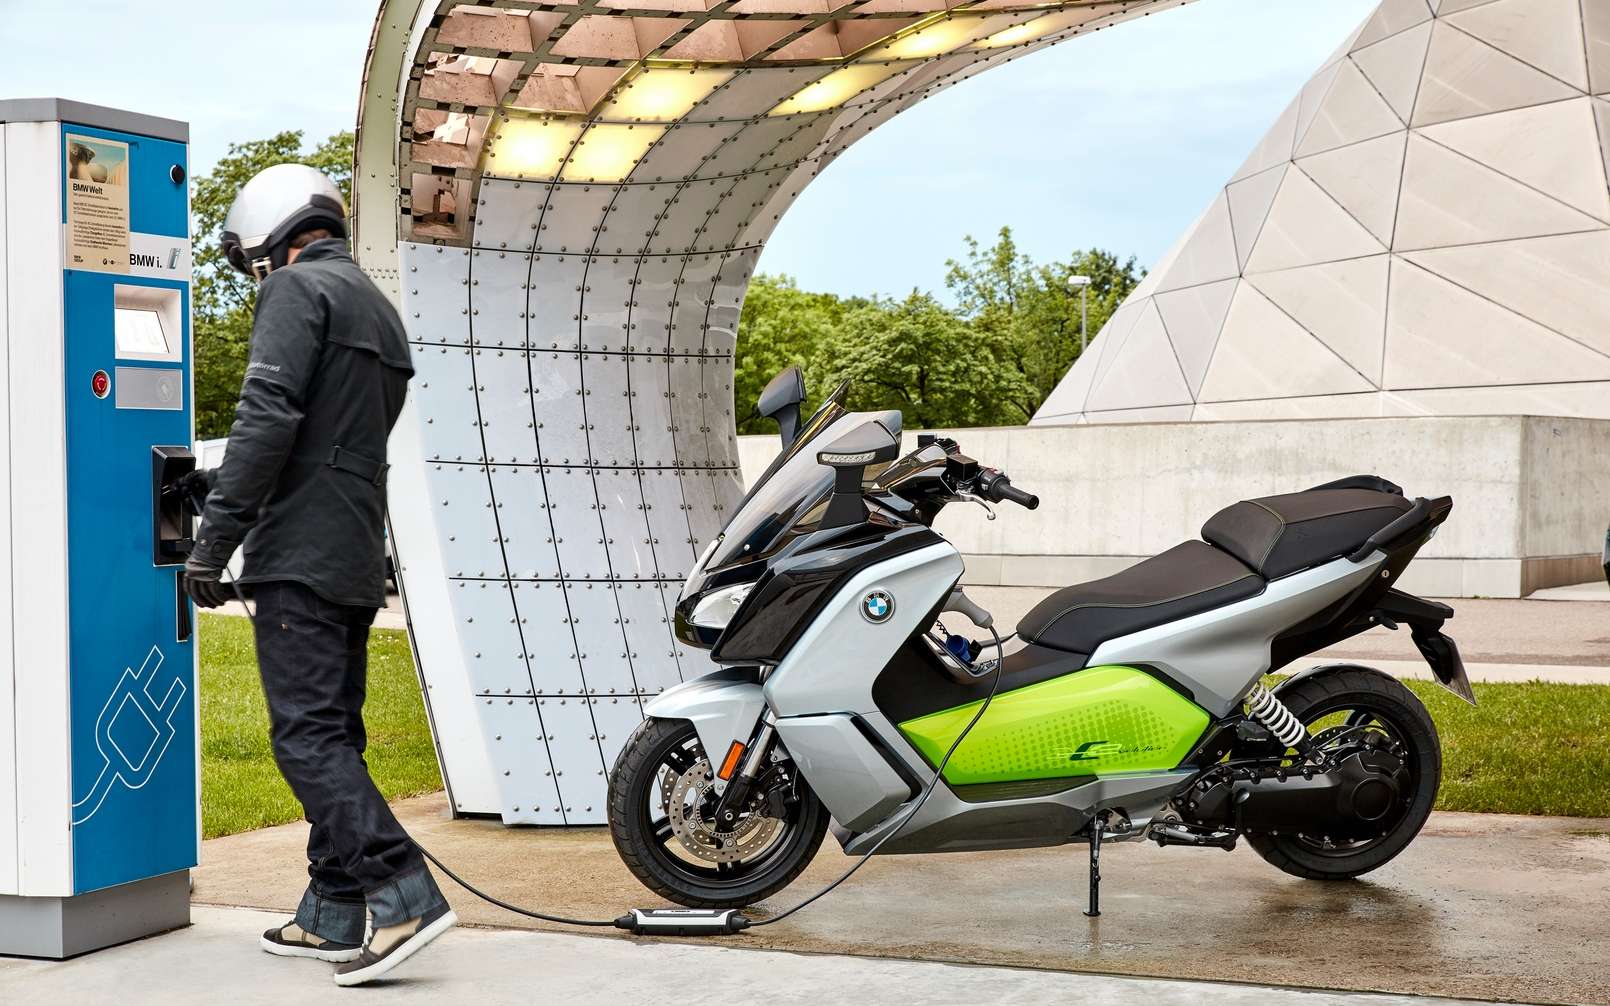  BMW  bient t un scooter  lectrique avec toit amovible